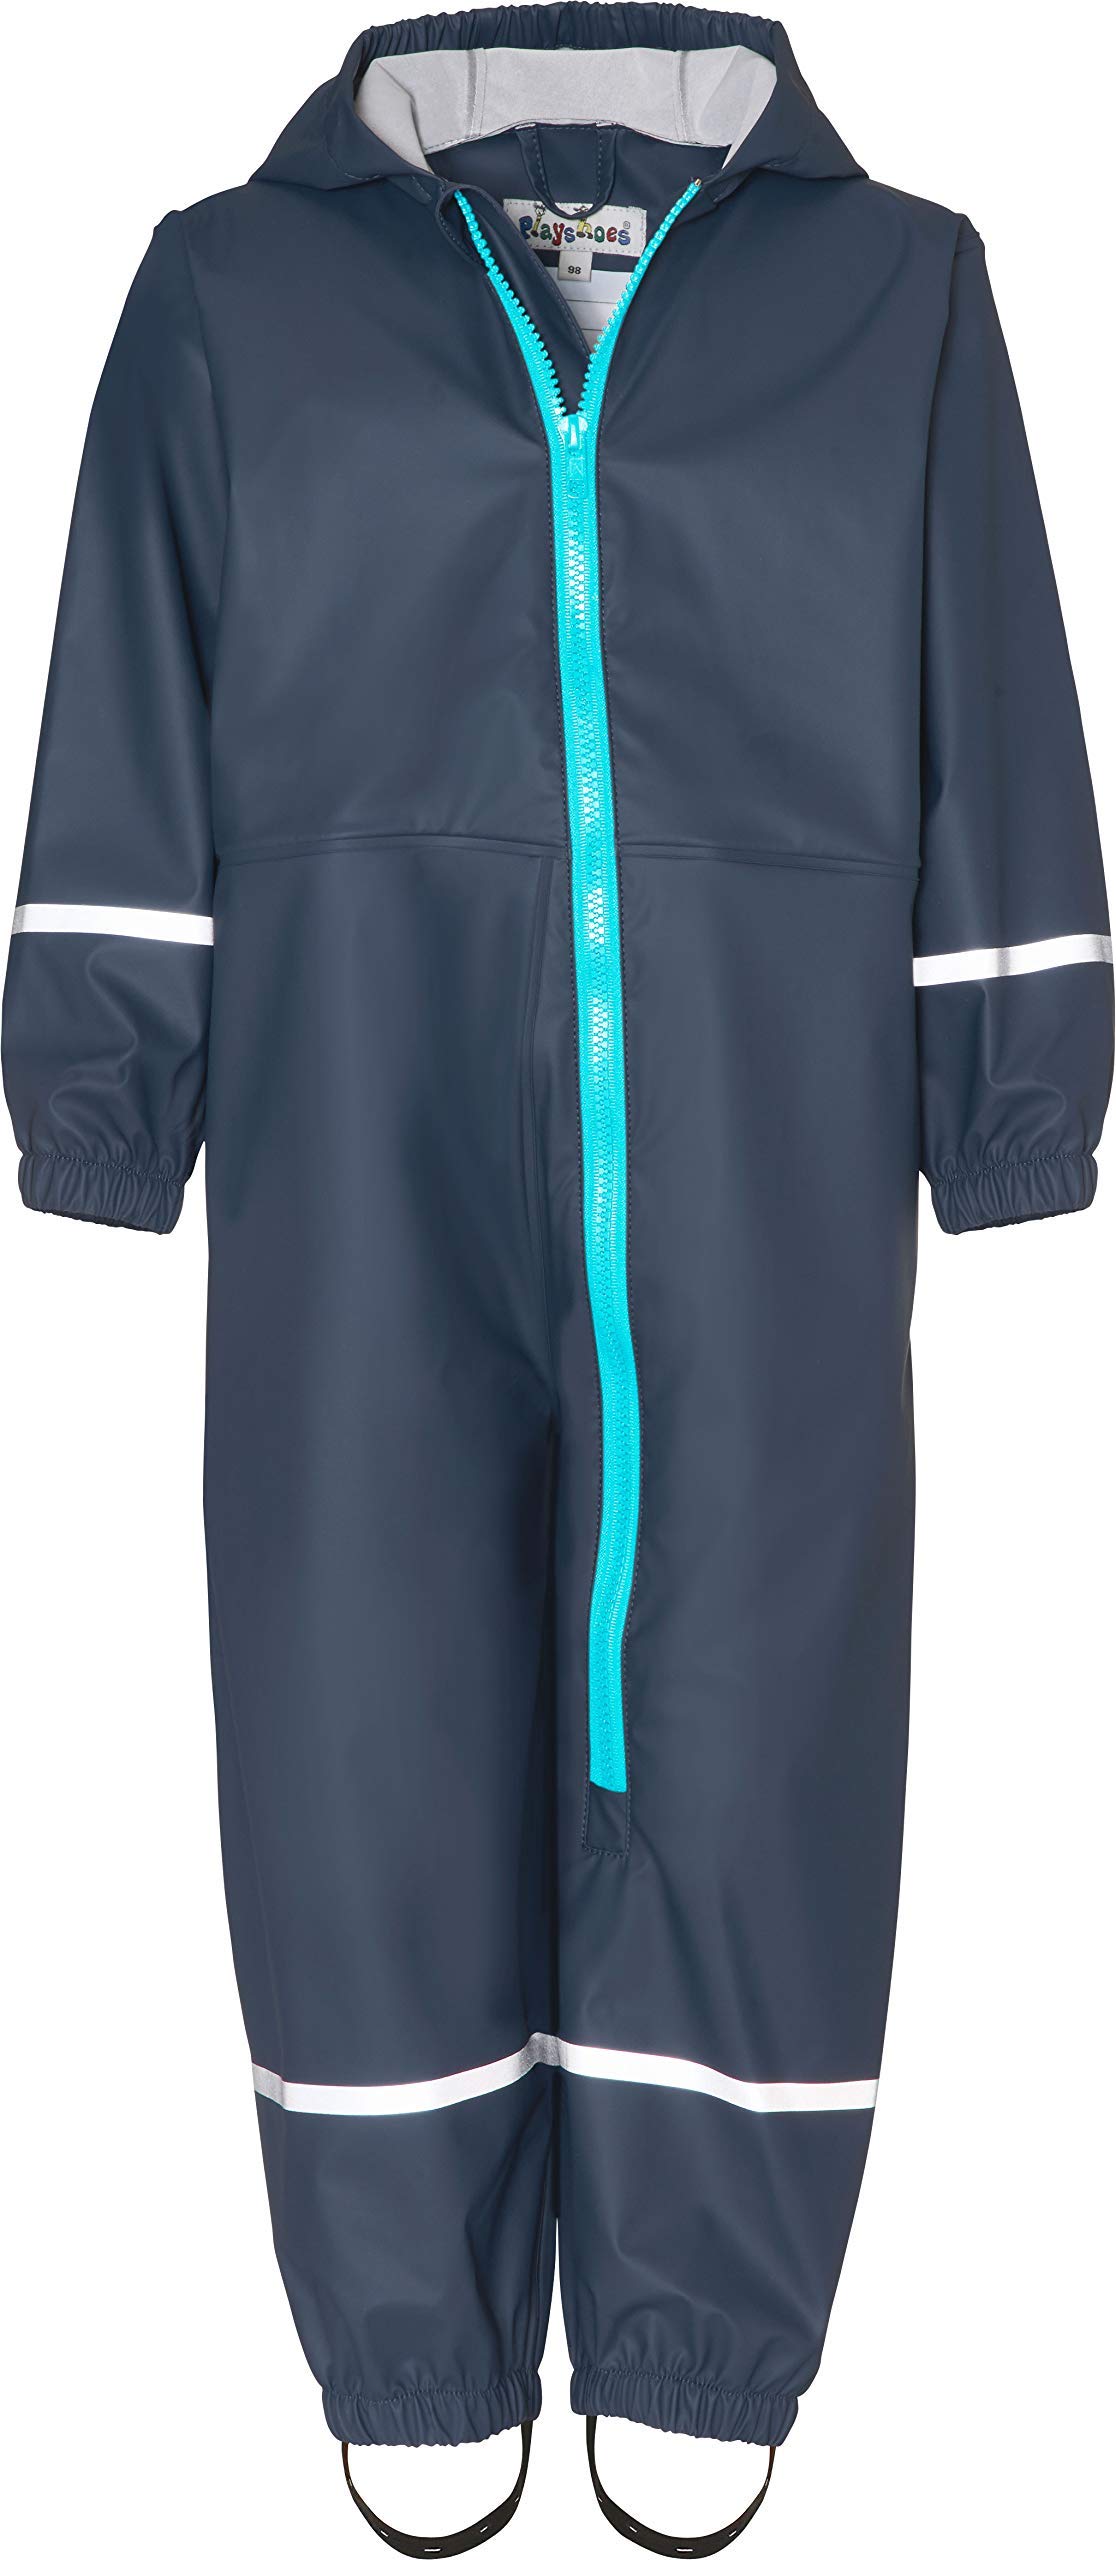 Playshoes Matschanzug Regenbekleidung Unisex Kinder,Marine,74